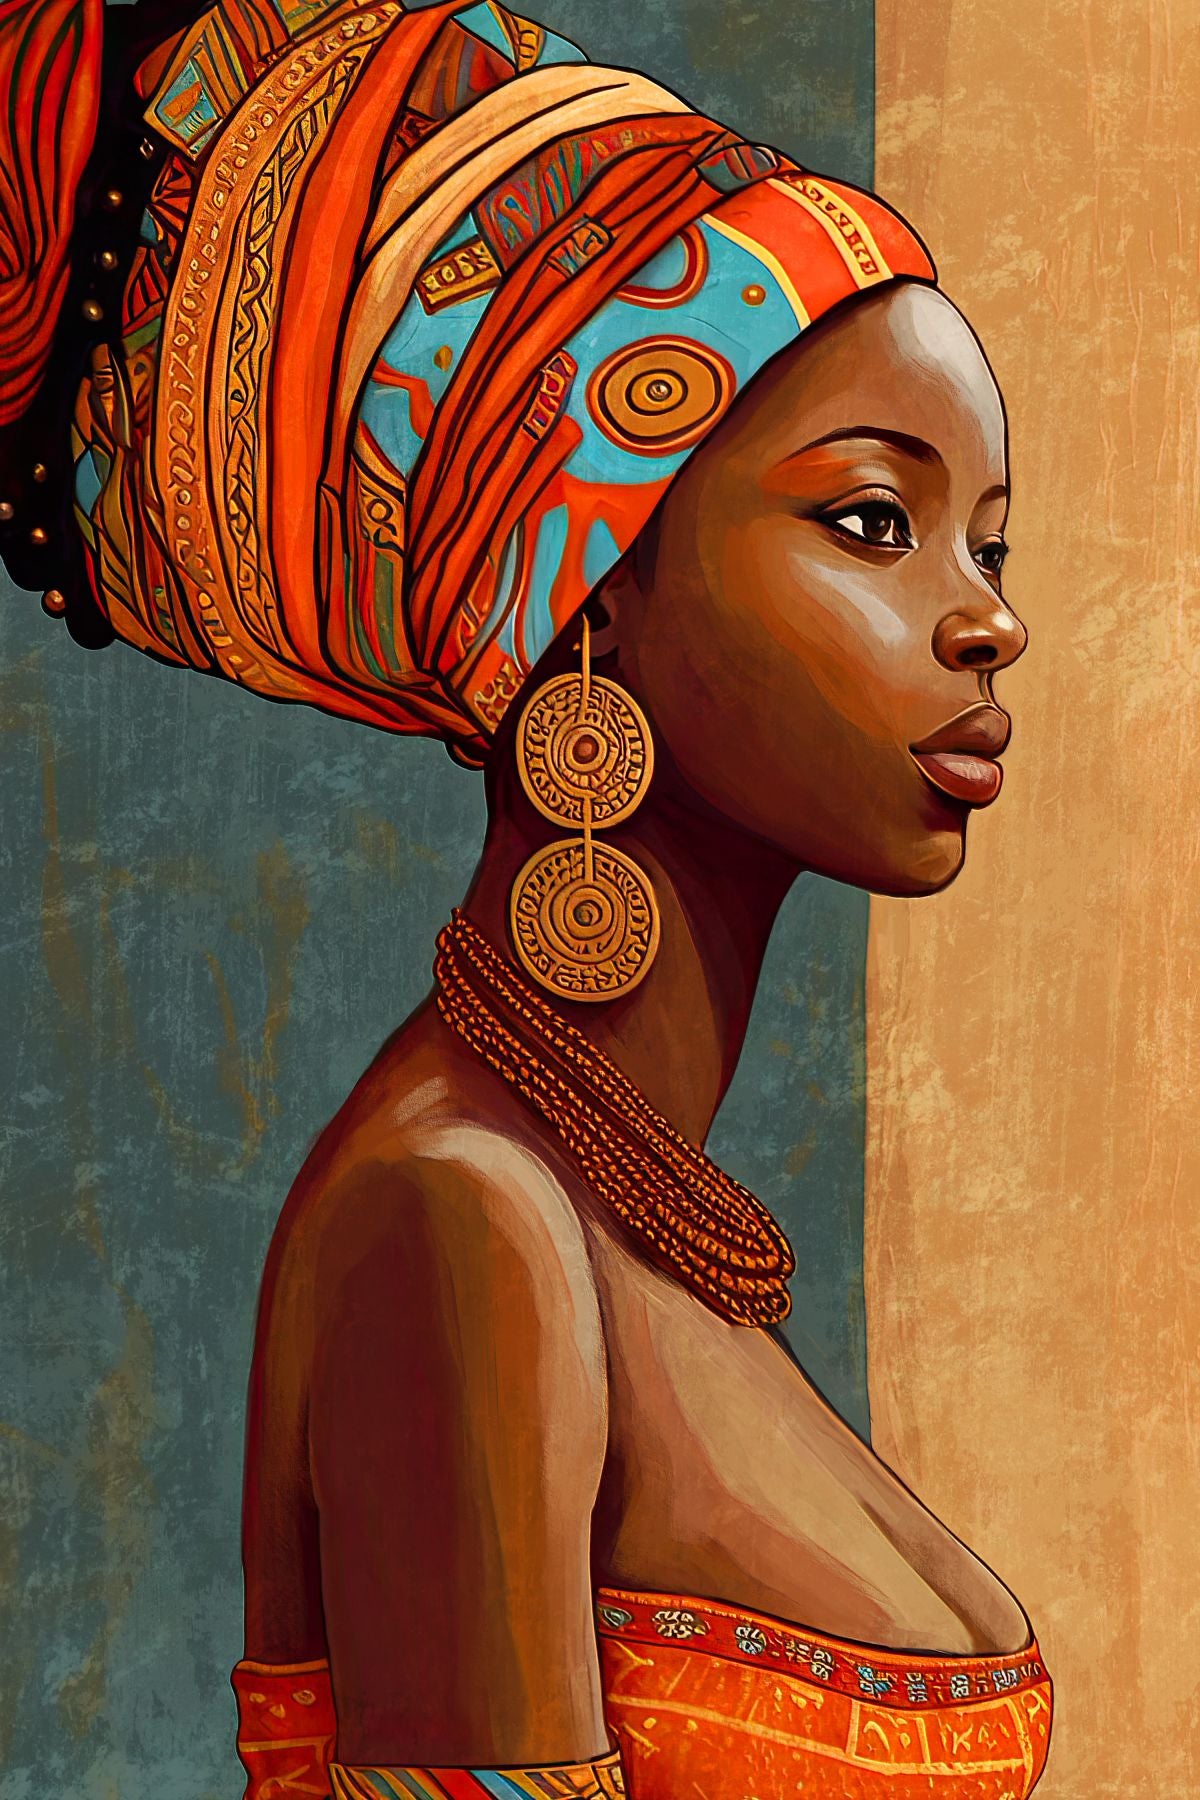 African Lady Portrait